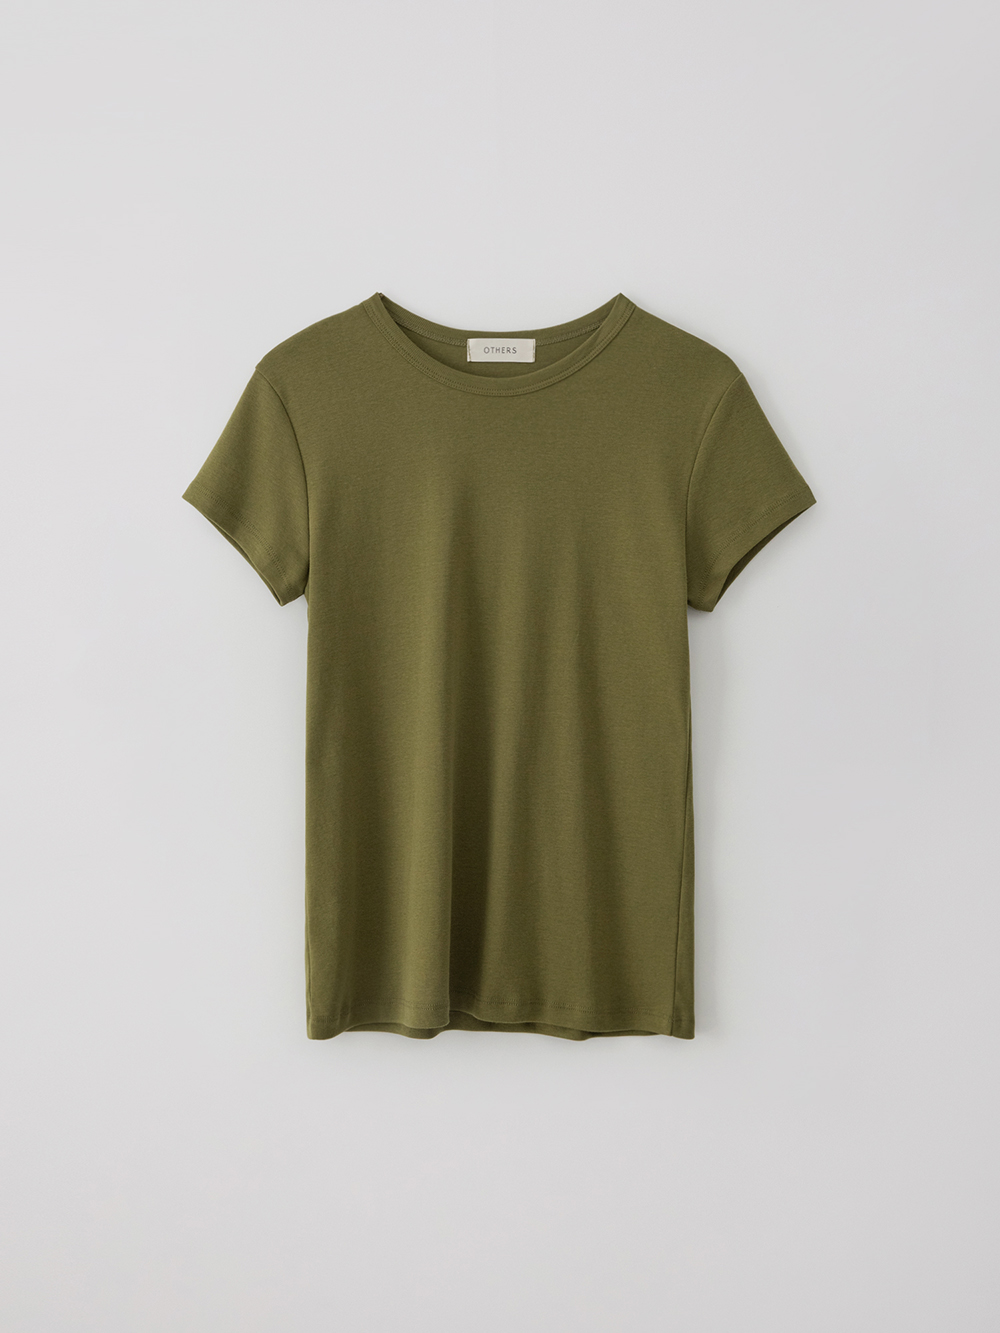 Slim short sleeve T-shirt (olive khaki)